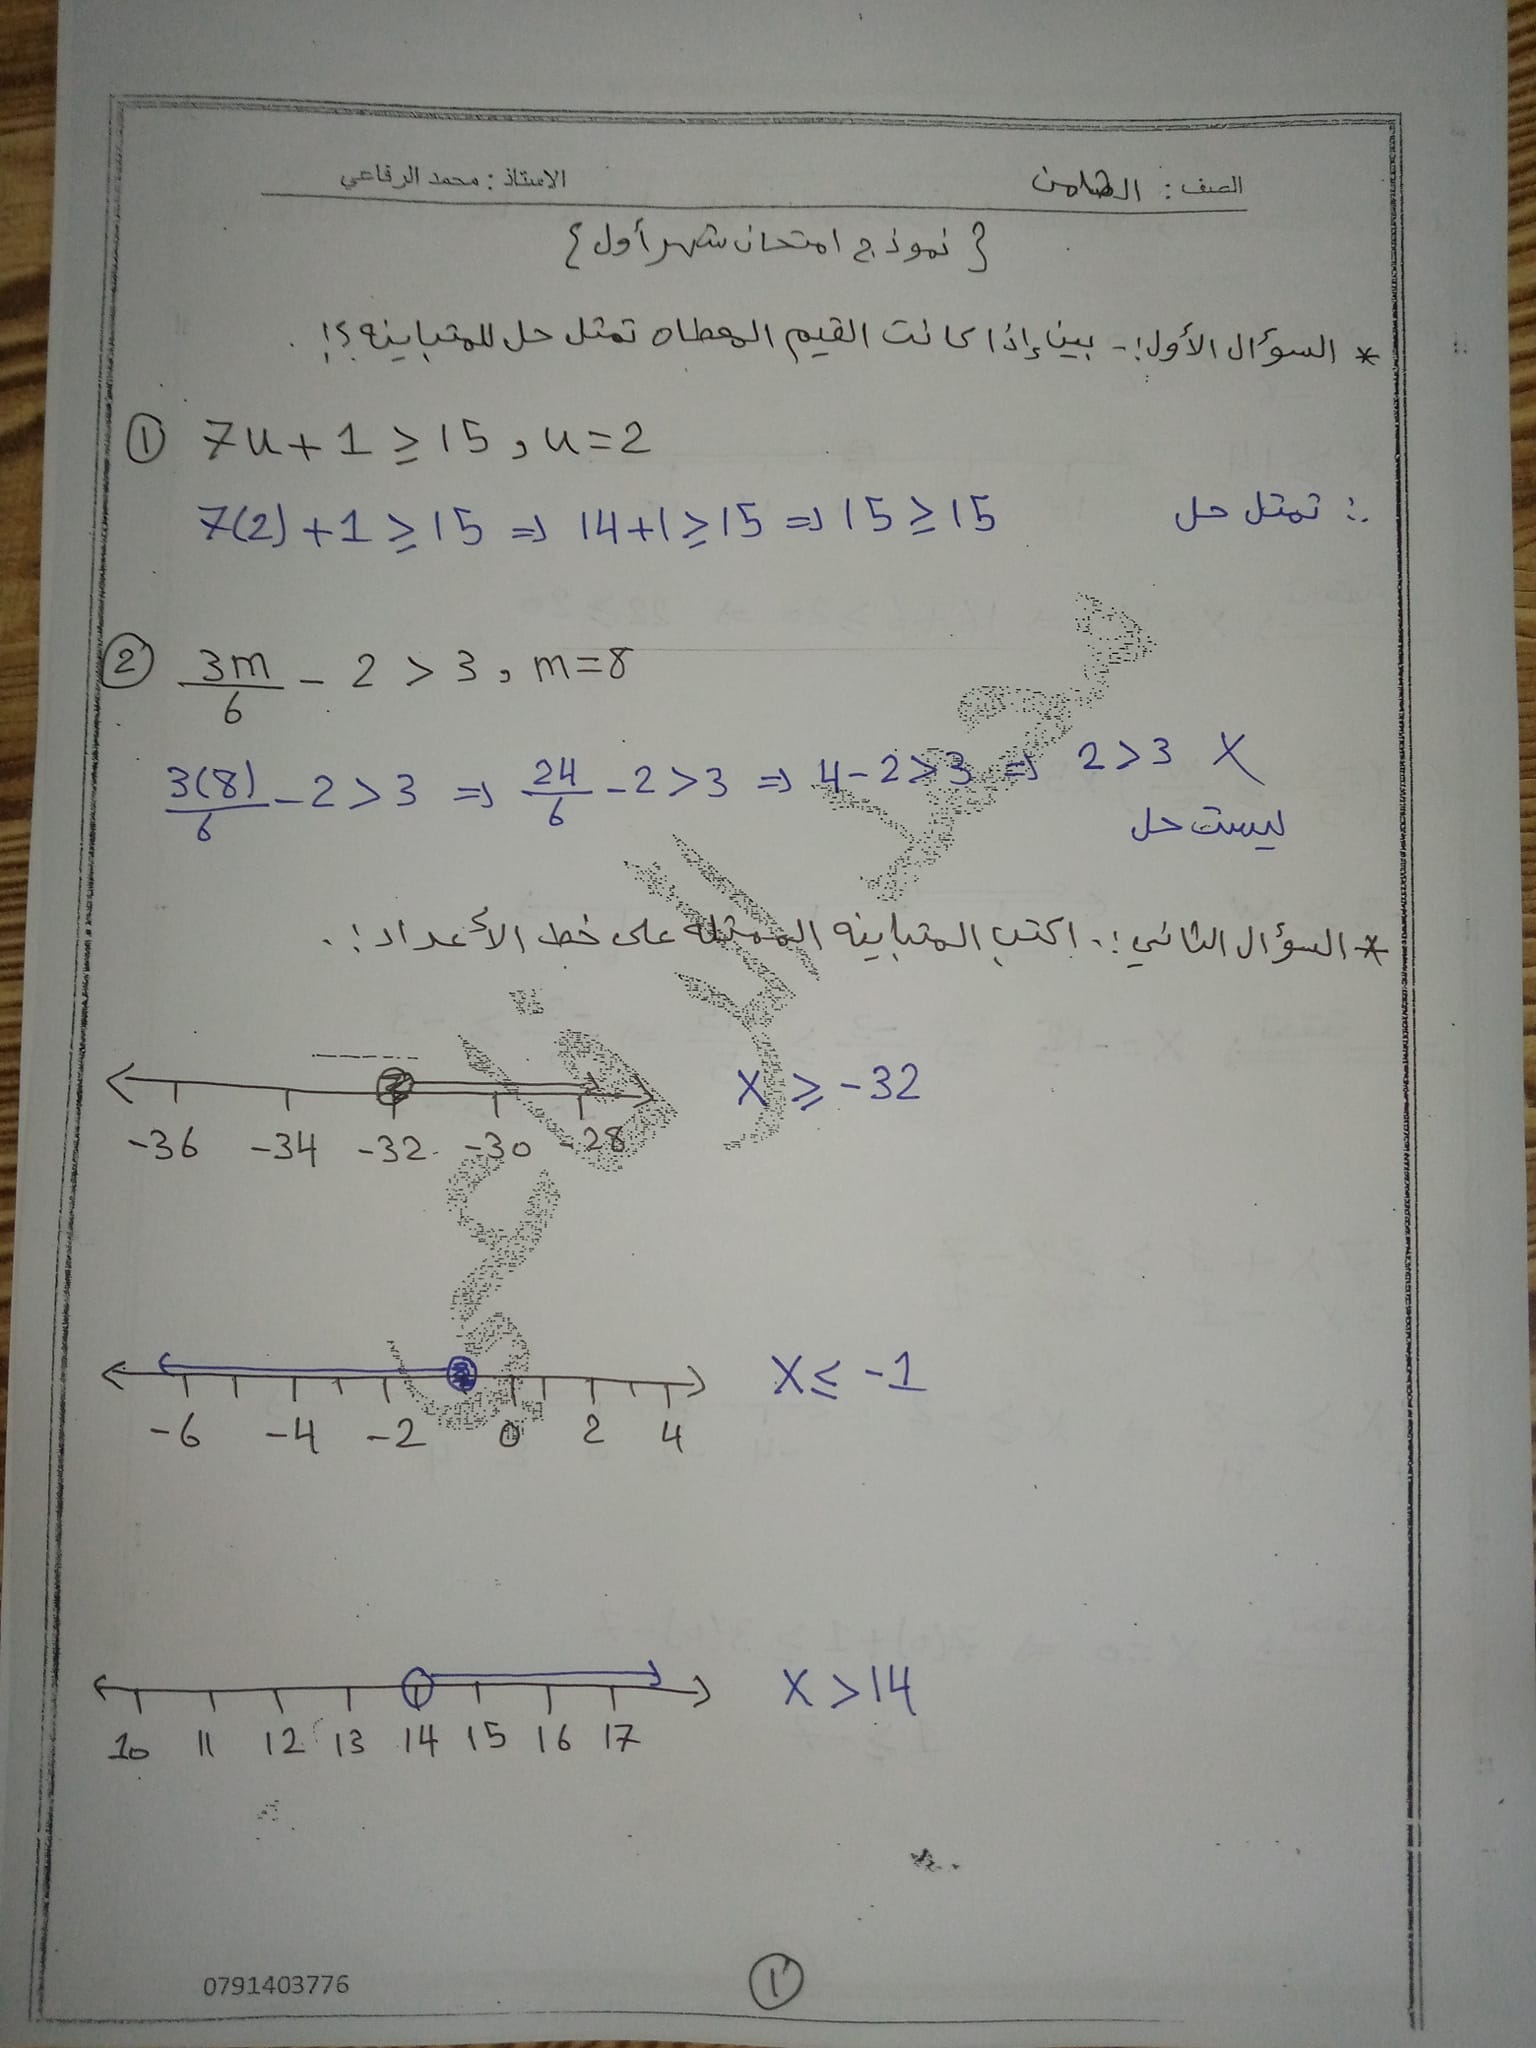 صور امتحان رياضيات الشهر الاول للصف الثامن الفصل الثاني 2022 مع الحل